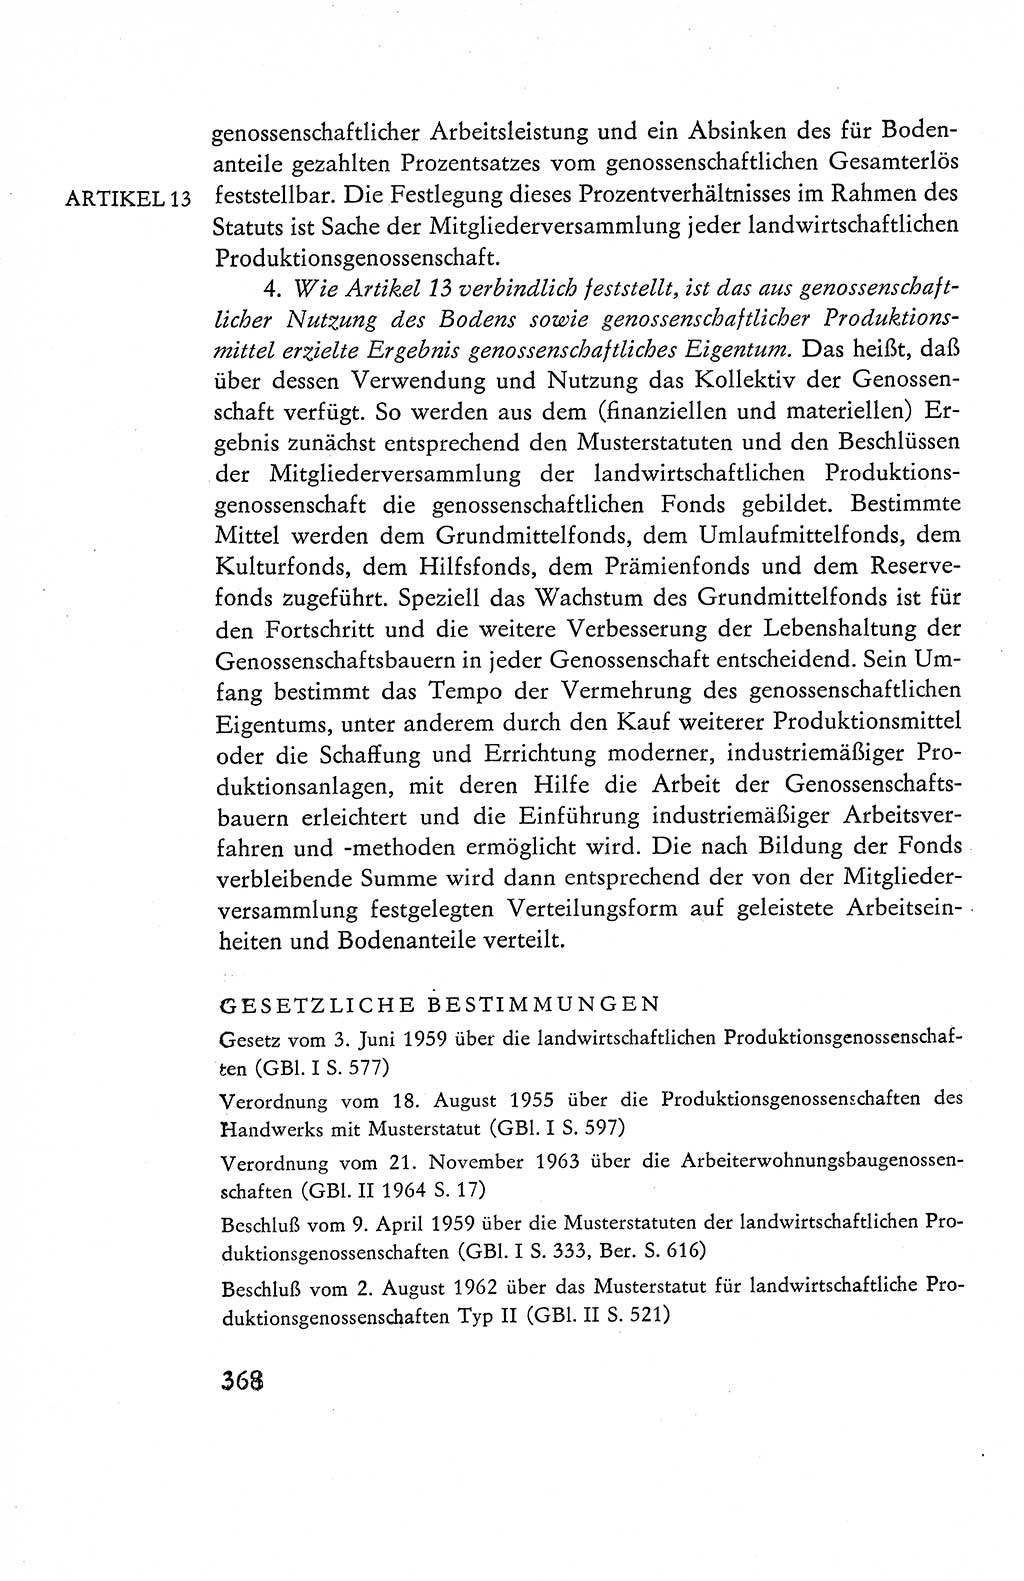 Verfassung der Deutschen Demokratischen Republik (DDR), Dokumente, Kommentar 1969, Band 1, Seite 368 (Verf. DDR Dok. Komm. 1969, Bd. 1, S. 368)